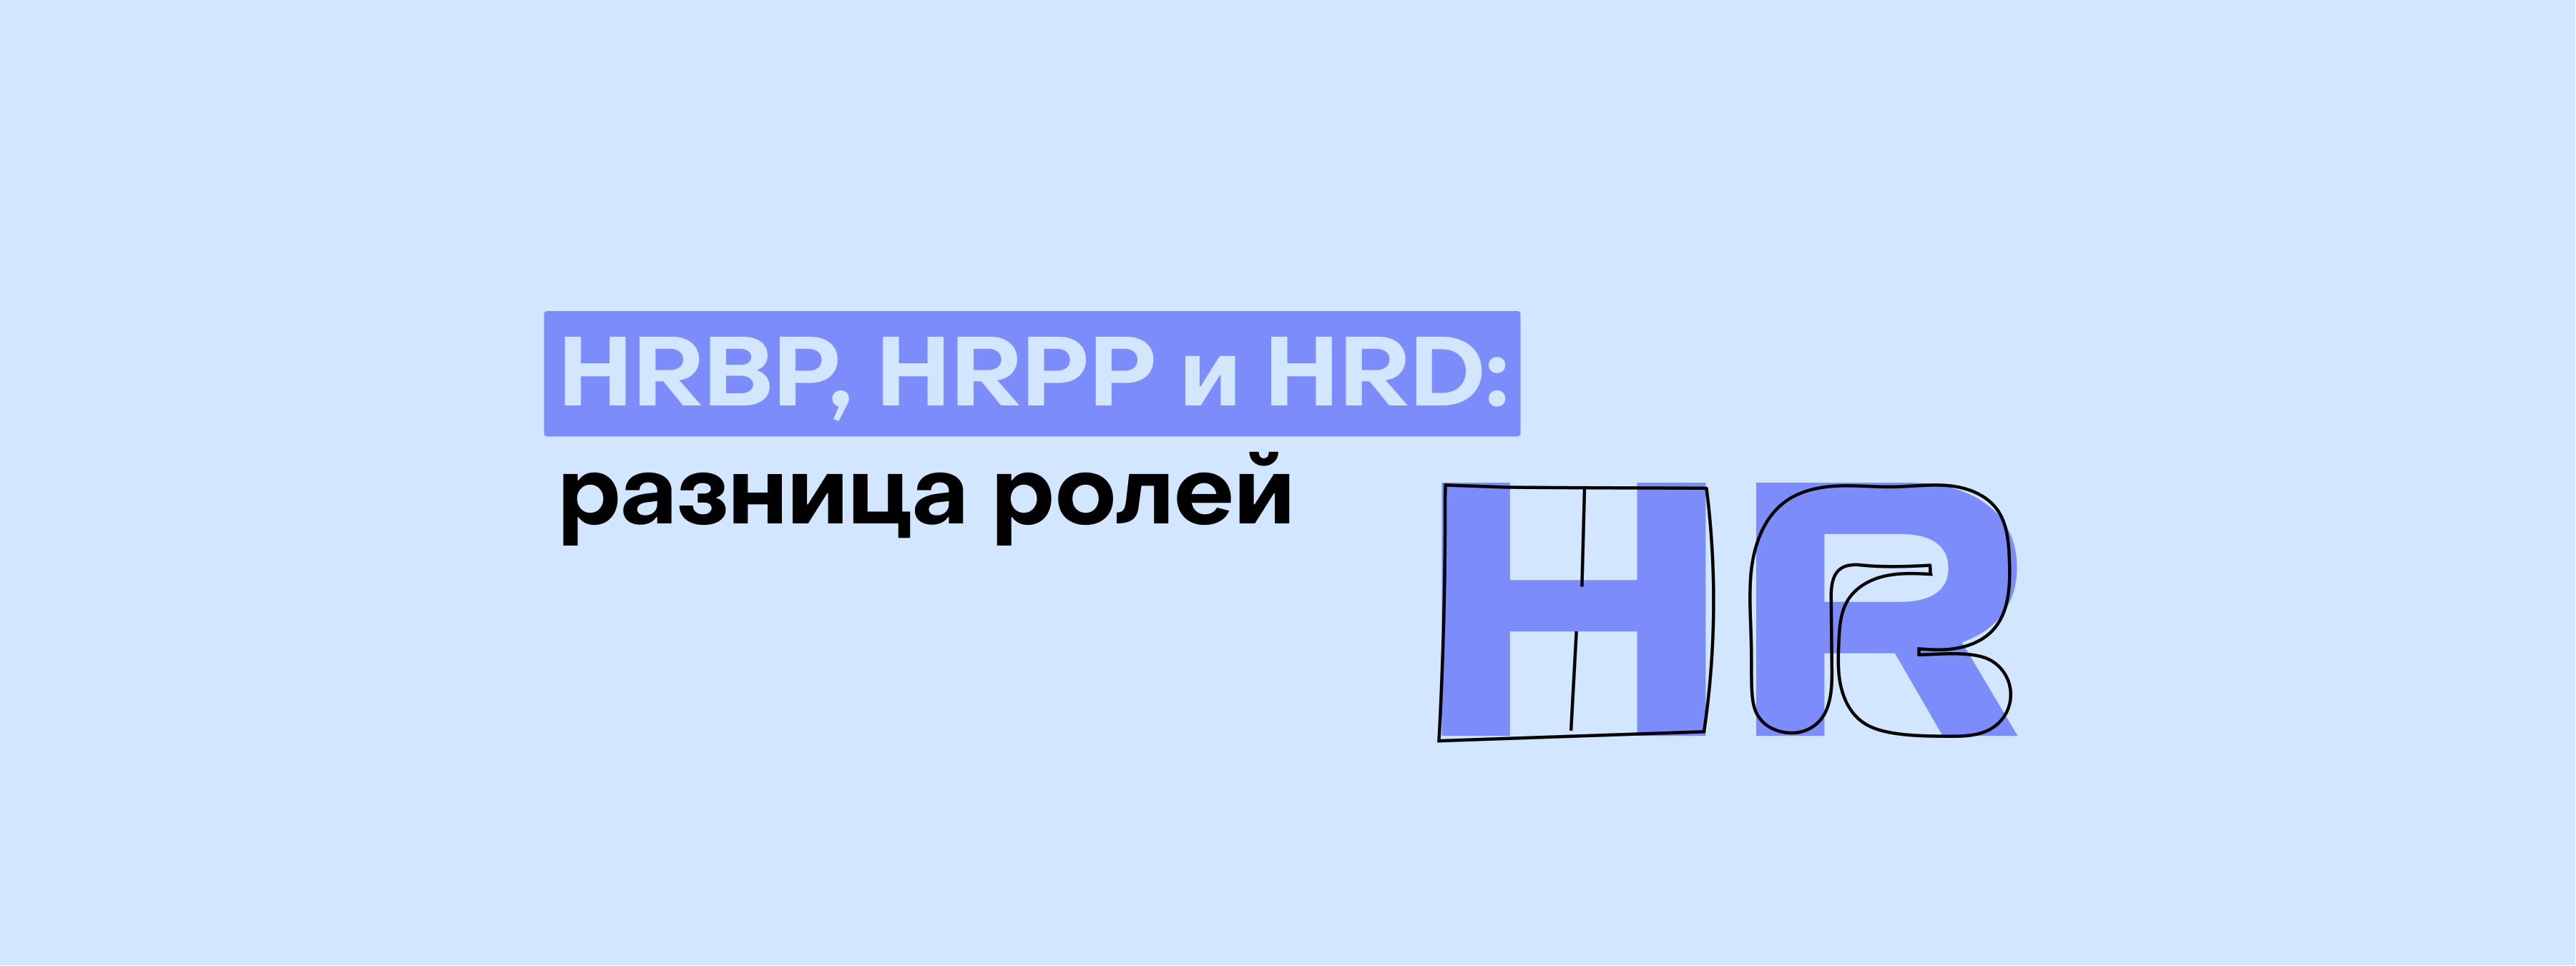 3 роли в эйчар: чем занимаются HRBP, HRPP и HRD?